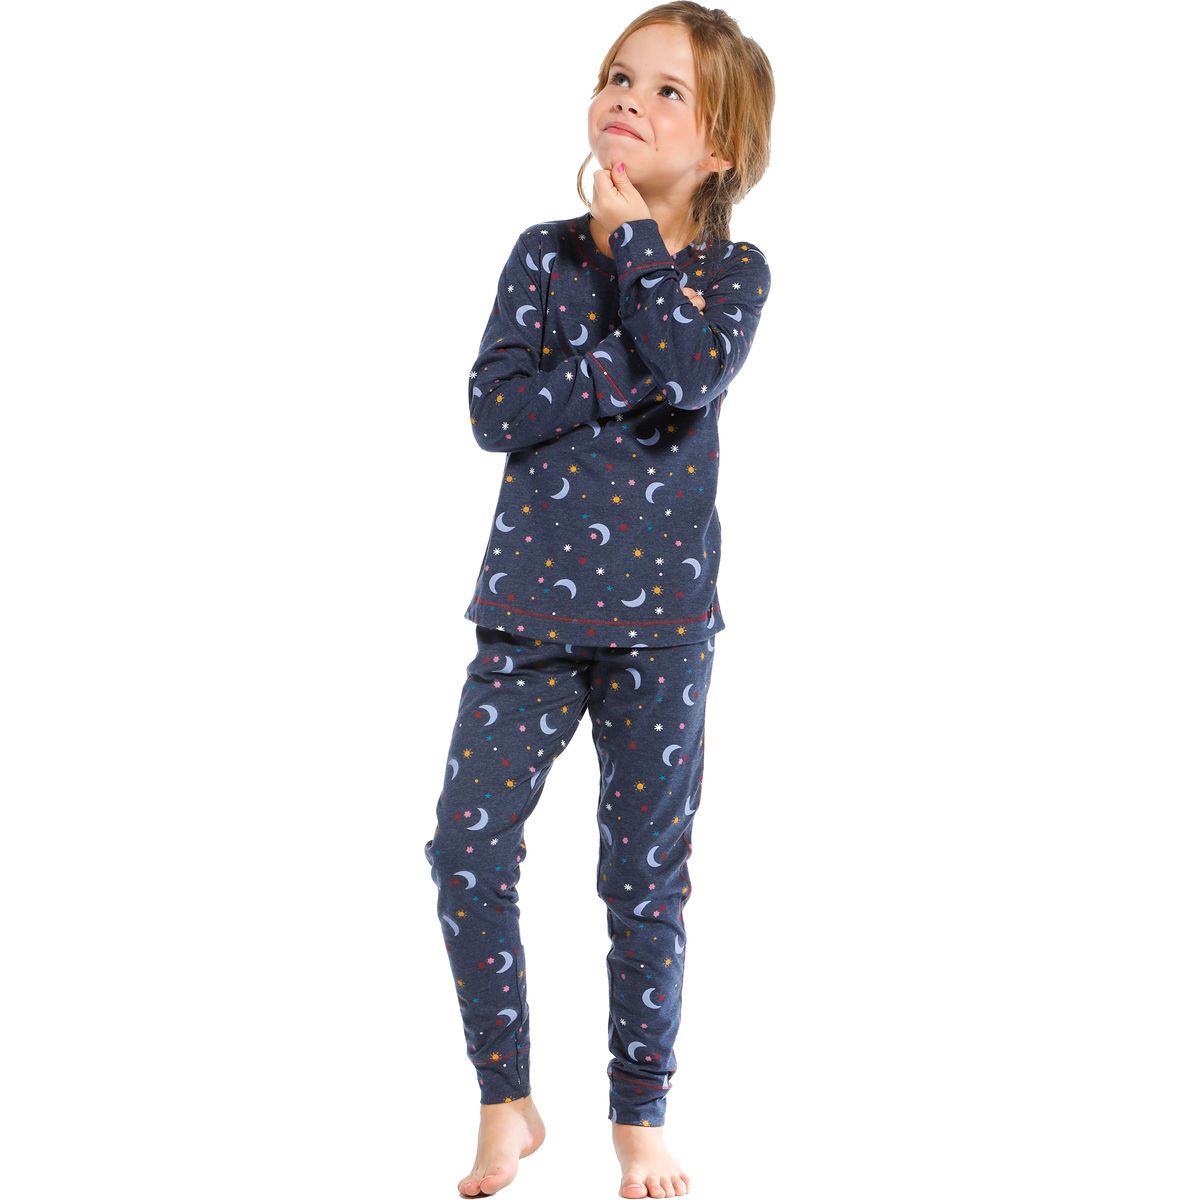 een beetje blad Verfrissend Meisjes pyjama moon en stars | Gratis verzending en retour | Online de  mooiste pyjama's, nachthemden, ondermode en meer